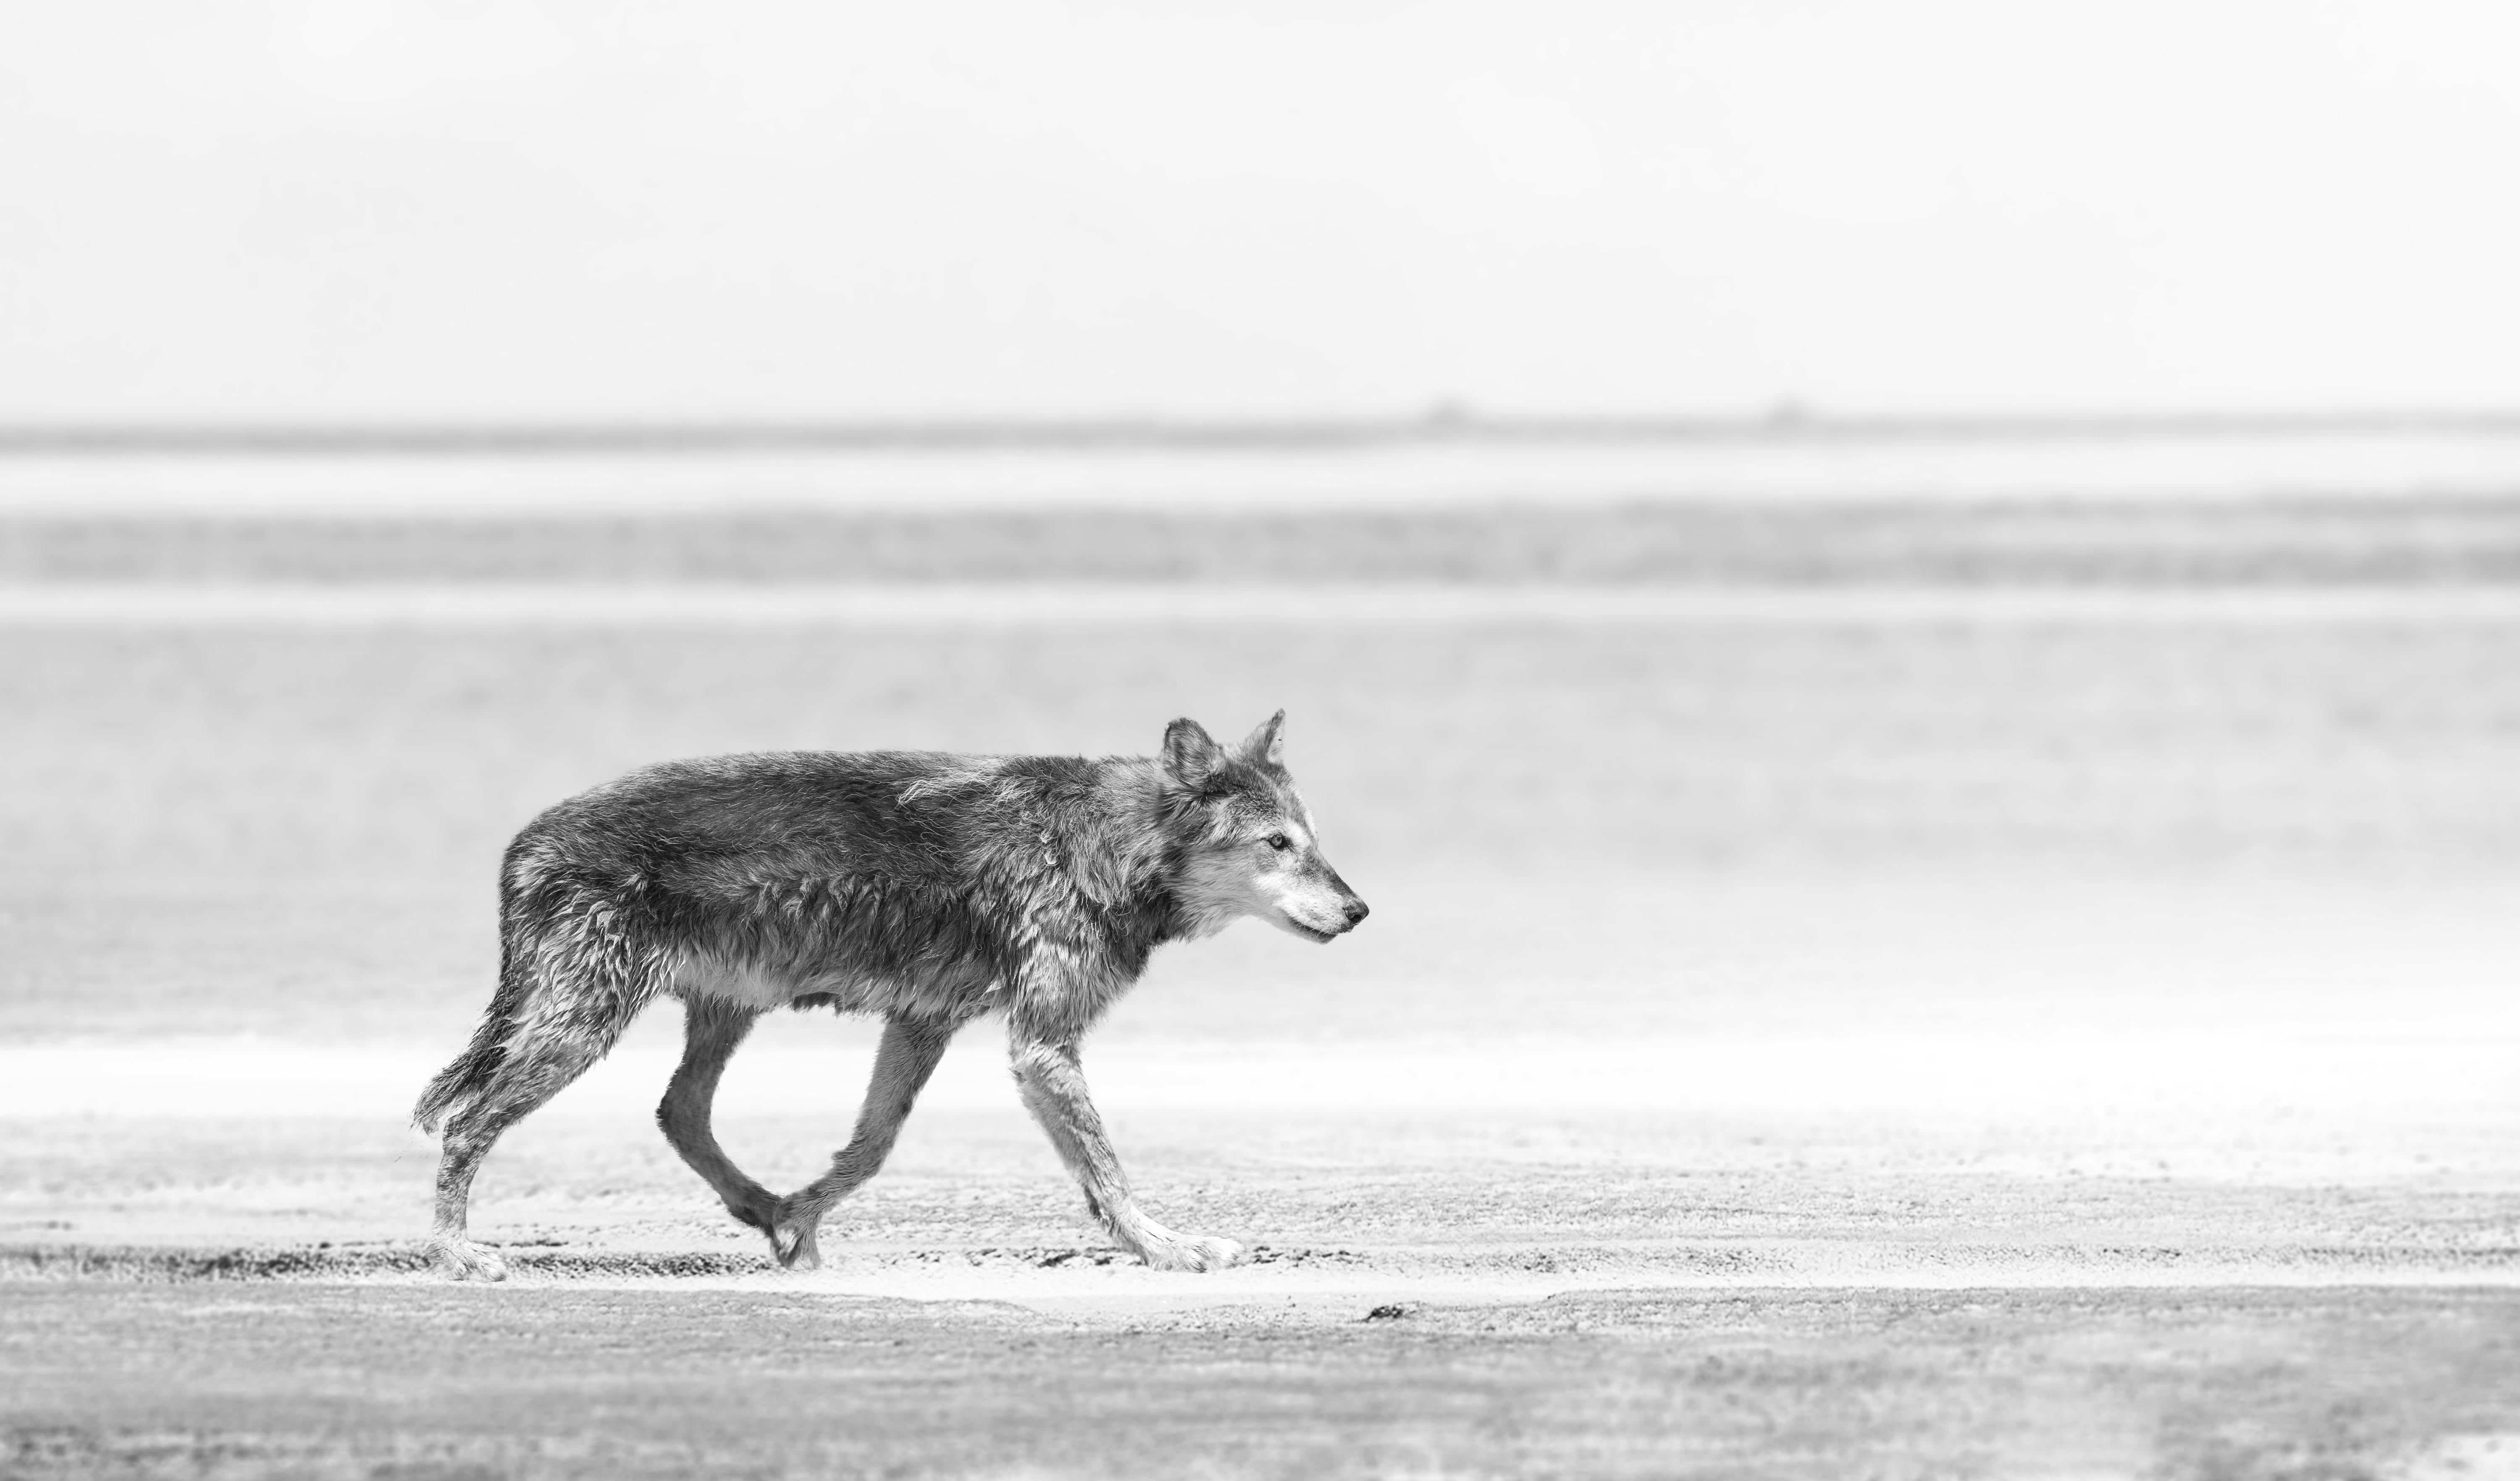 Il s'agit d'une photographie contemporaine en noir et blanc d'un loup du littoral.
Imprimé sur du papier d'archives en utilisant uniquement de l'encre d'archives. 
Edition de 50
Chantée et numérotée 
Encadrement disponible. Renseignez-vous sur les